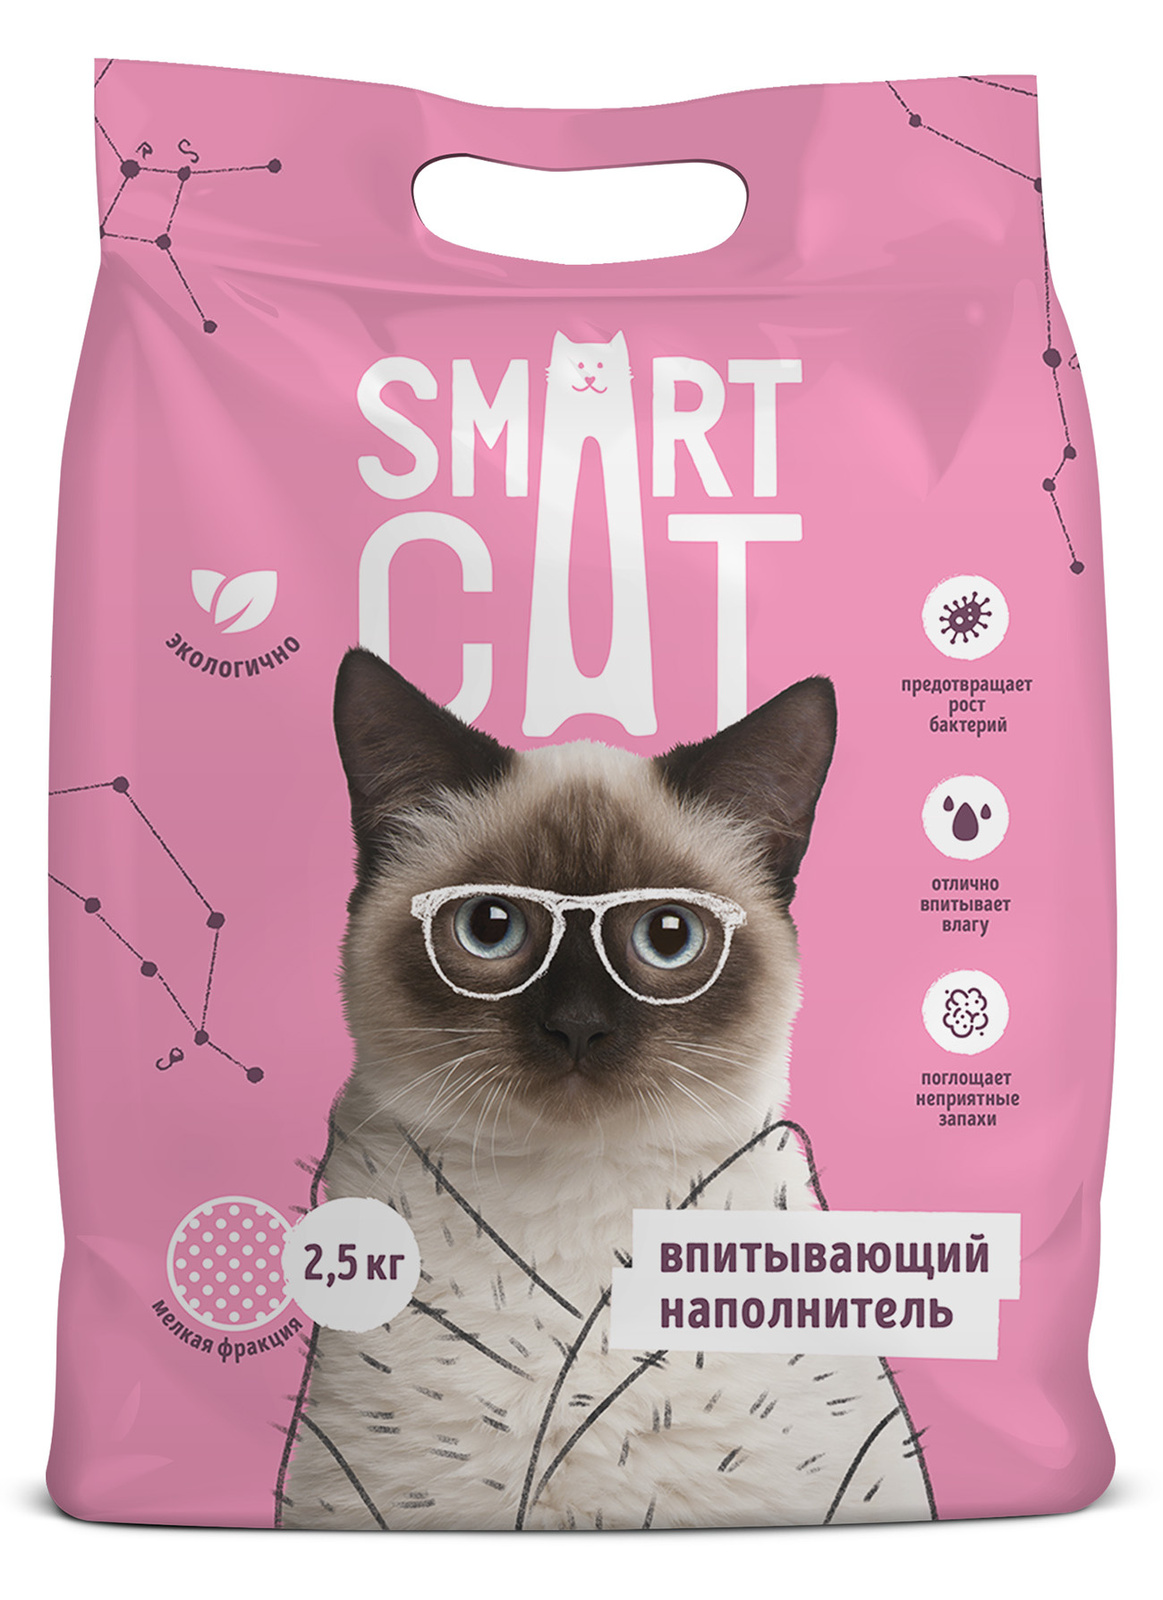 Smart Cat наполнитель Smart Cat наполнитель впитывающий наполнитель, мелкая фракция (5 кг) smart cat наполнитель smart cat наполнитель впитывающий наполнитель мелкая фракция 5 кг